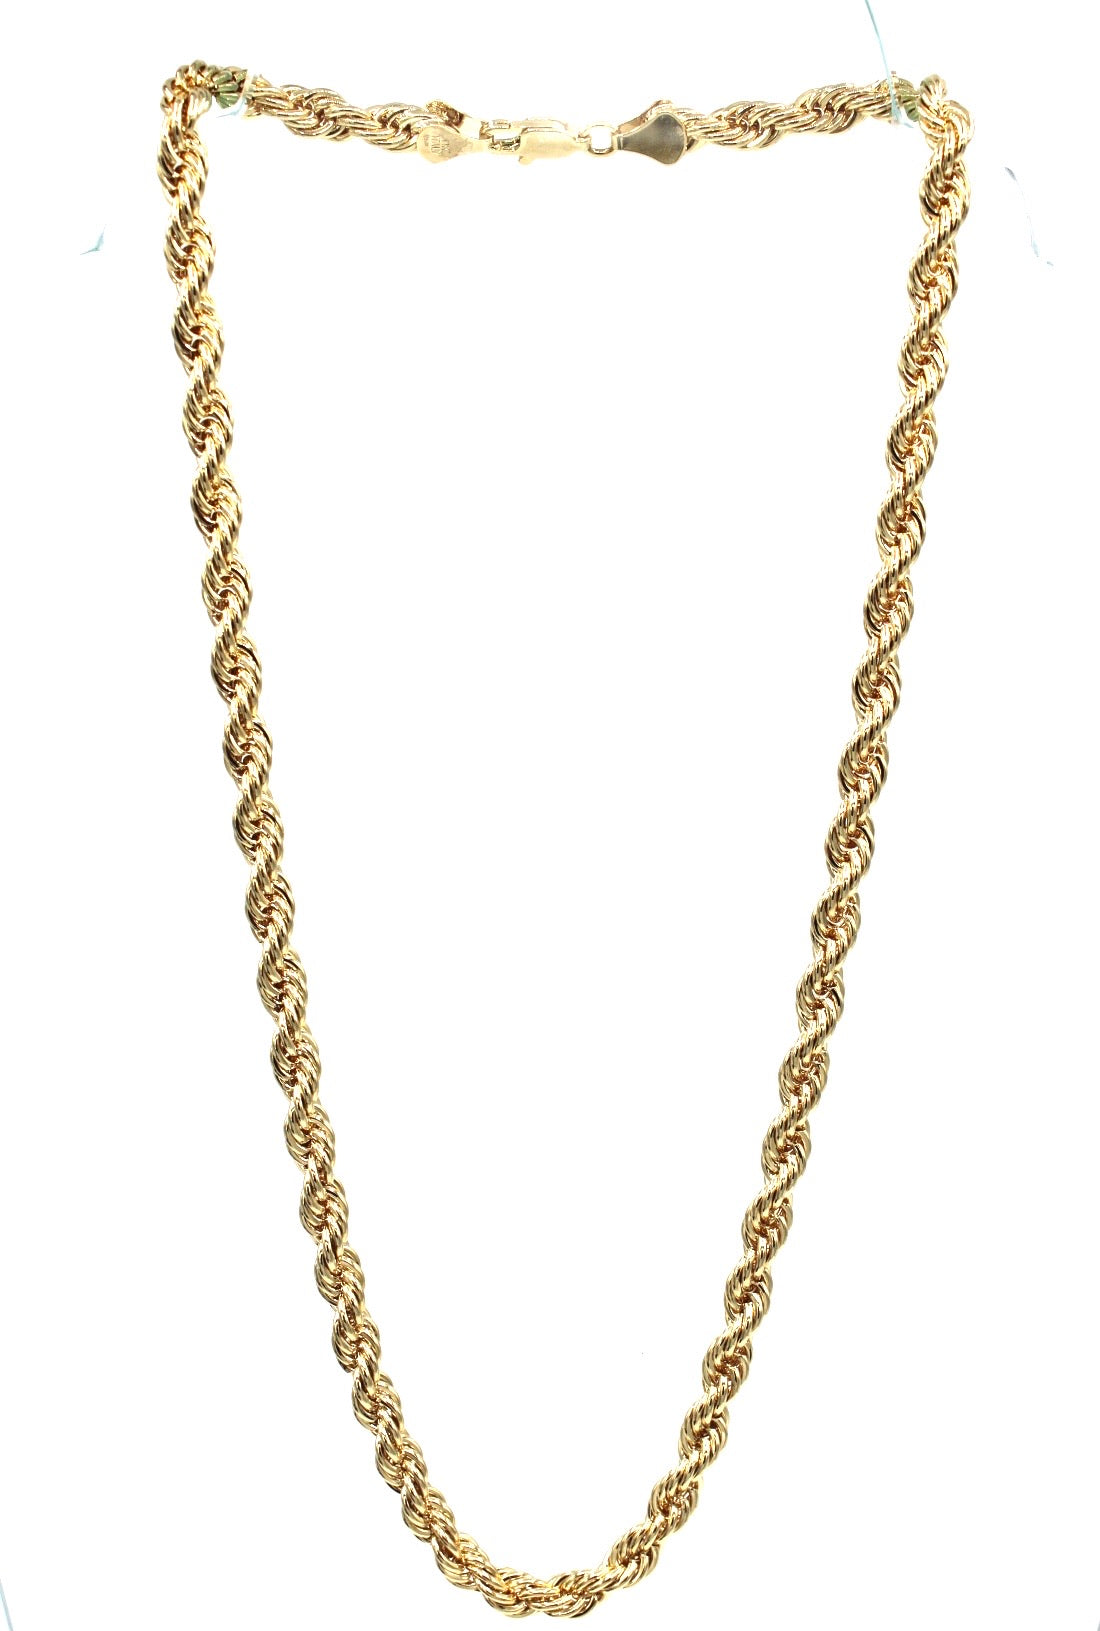 Gold rope chain - Monique Fashion Accessories